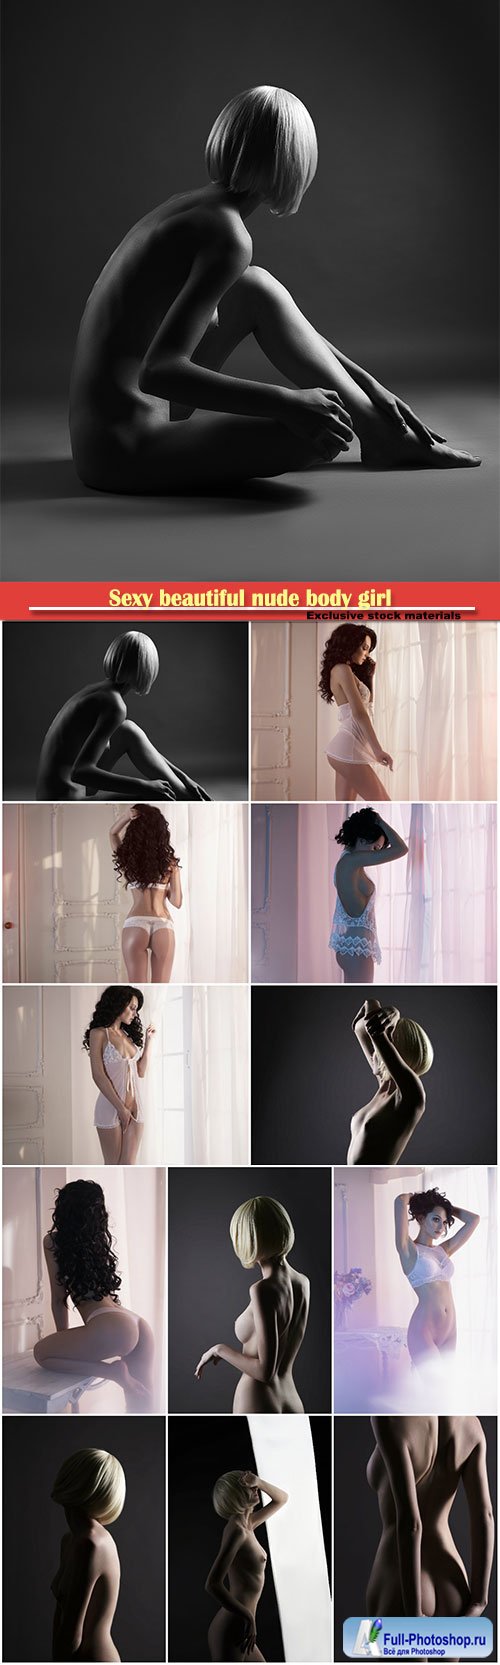 Sexy beautiful nude body girl